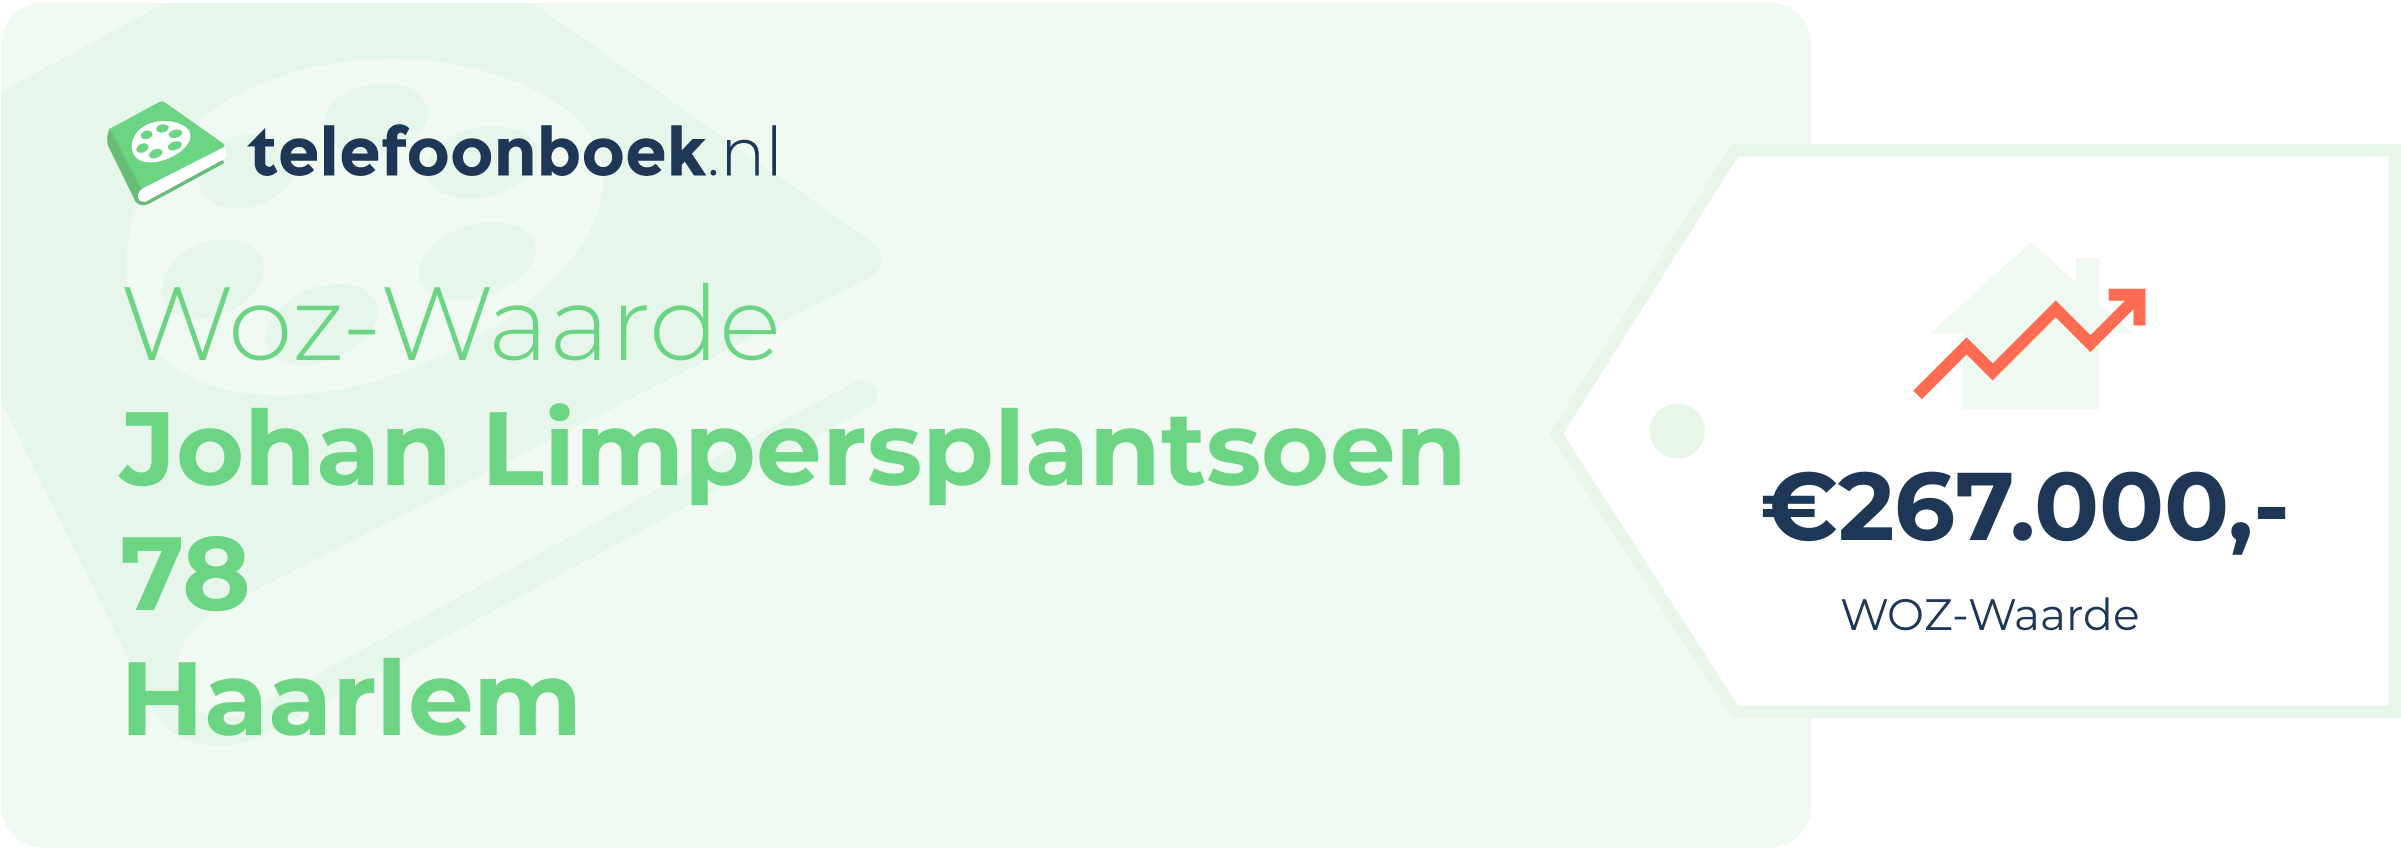 WOZ-waarde Johan Limpersplantsoen 78 Haarlem